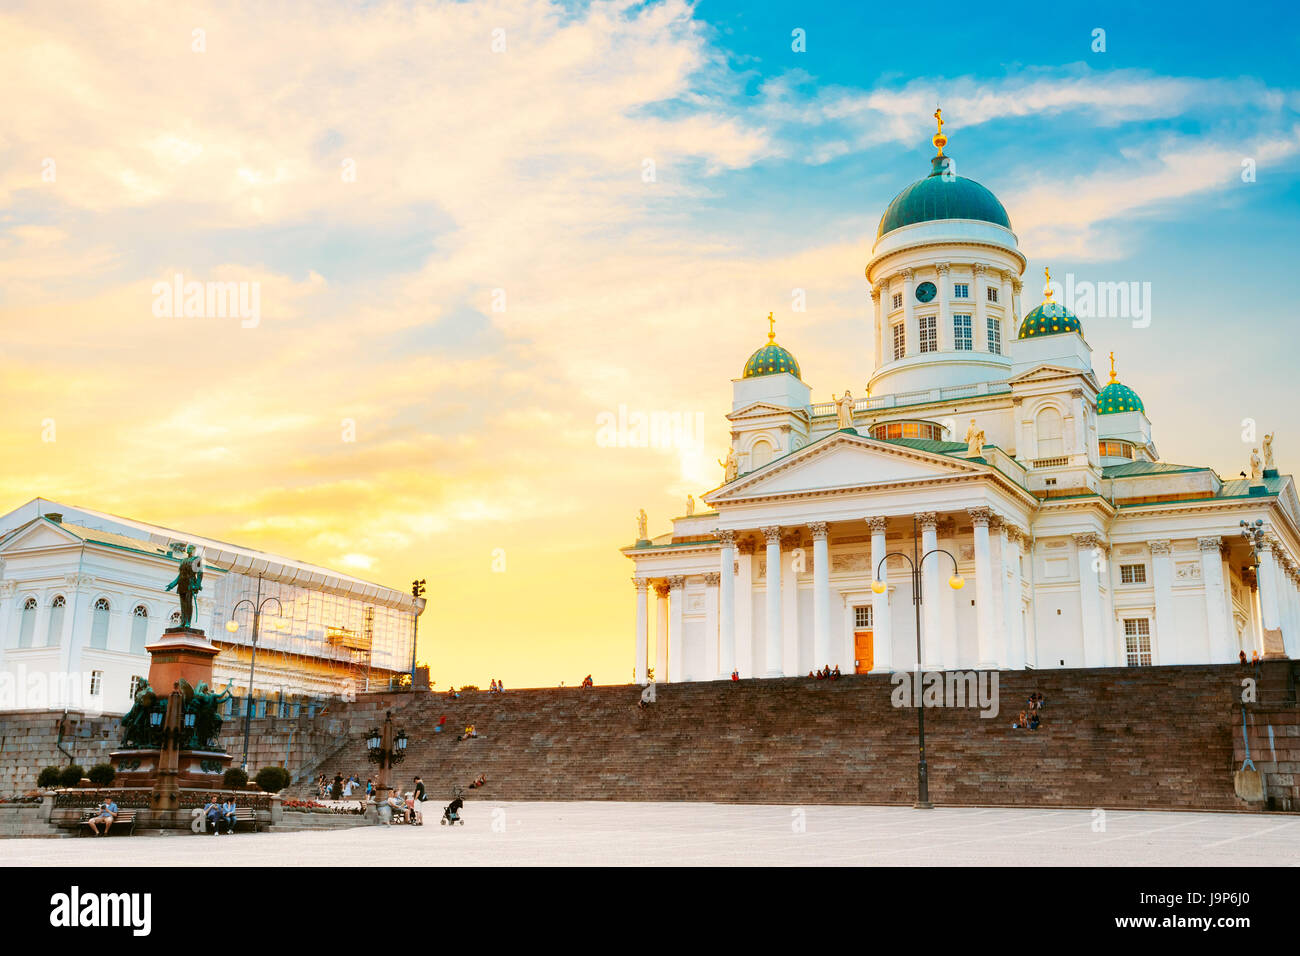 Helsinki, Finlandia. Famosos en la capital finlandesa - La Plaza del Senado con la Catedral Luterana y el monumento al emperador Alexander II de Rusia en el verano S Foto de stock